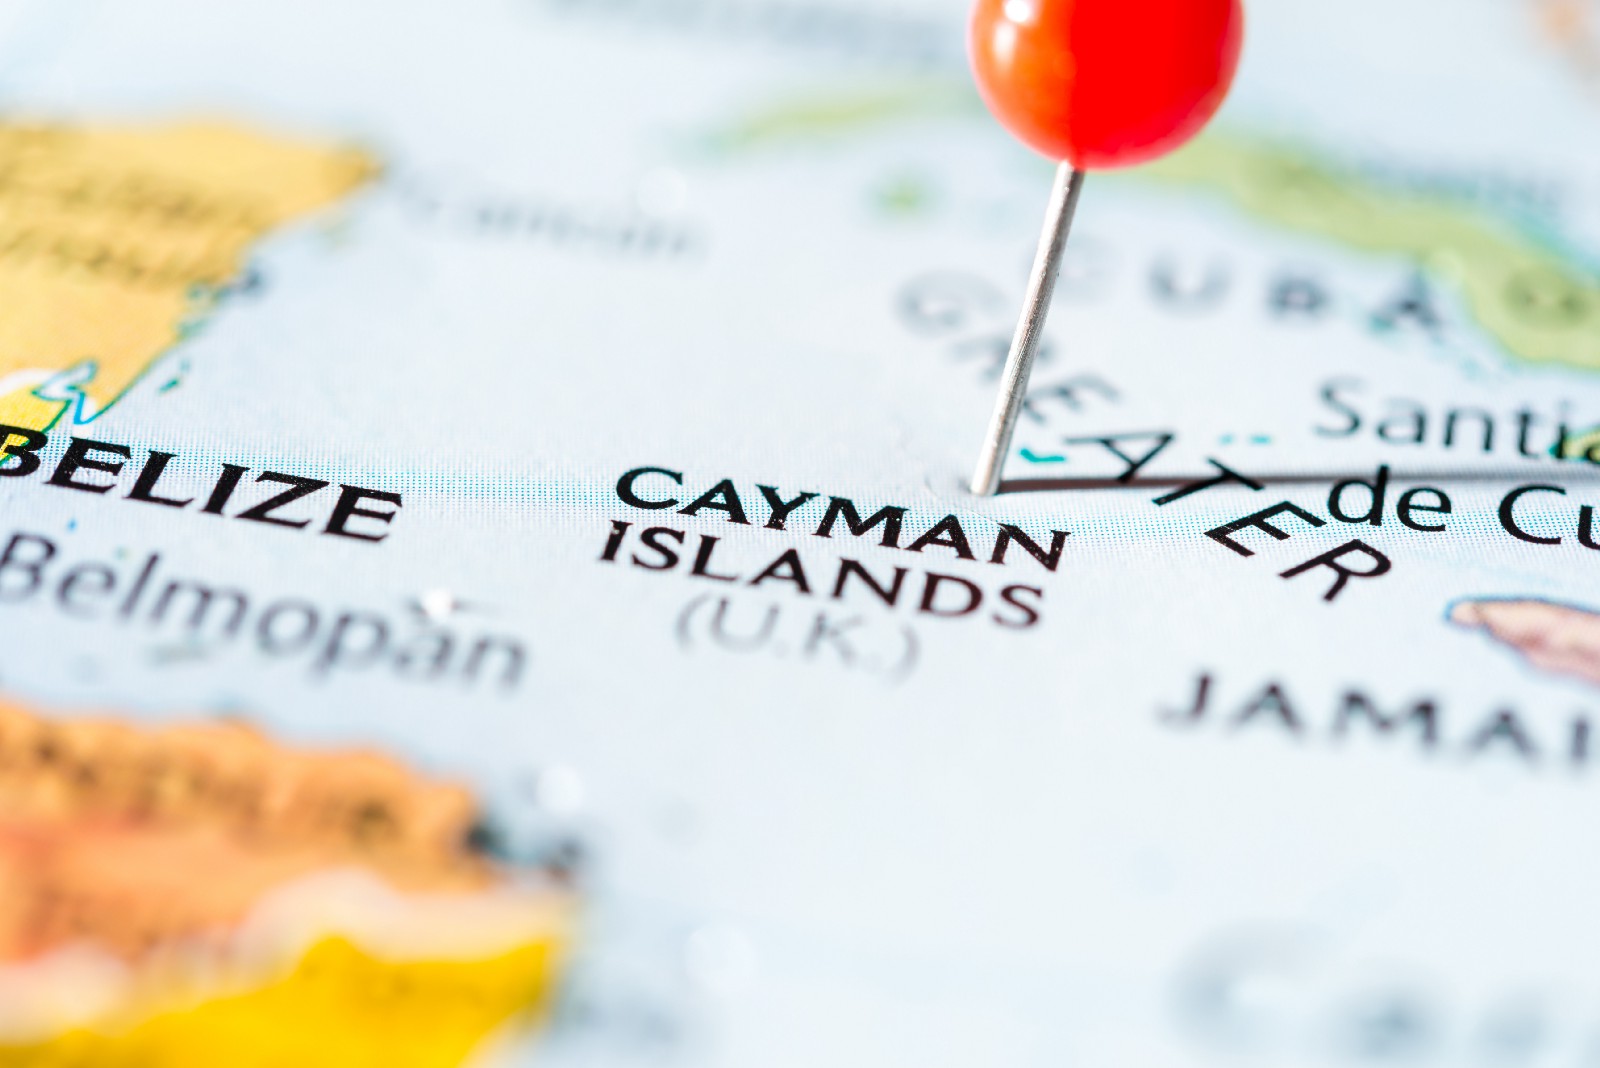 Cayman Islands: virtual assets regulatory overview